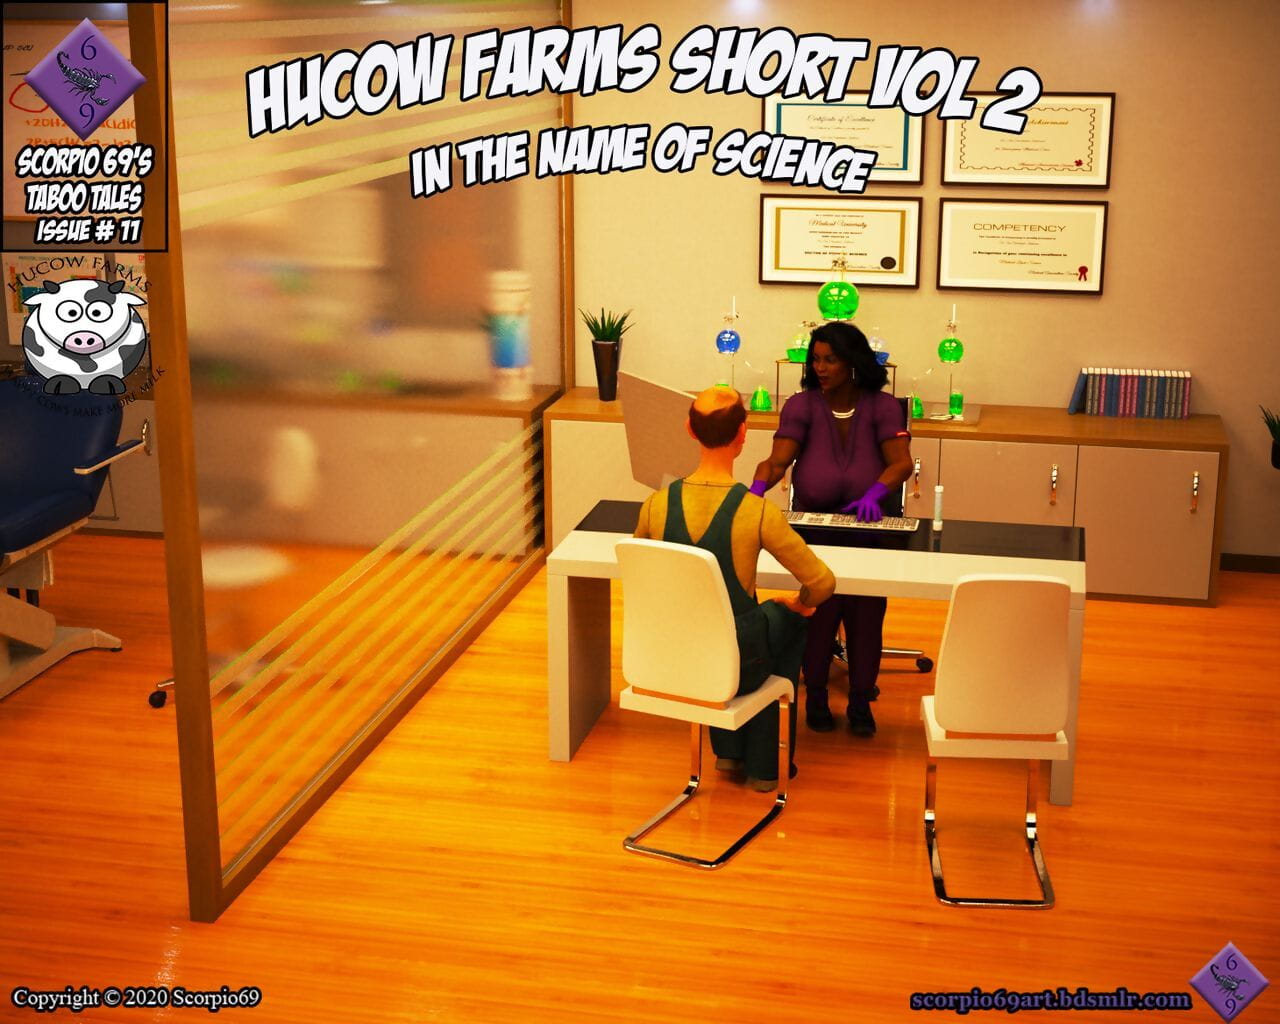 scorpio69 hucow granjas Pantalones cortos Vol 2 en el nombre de la ciencia page 1